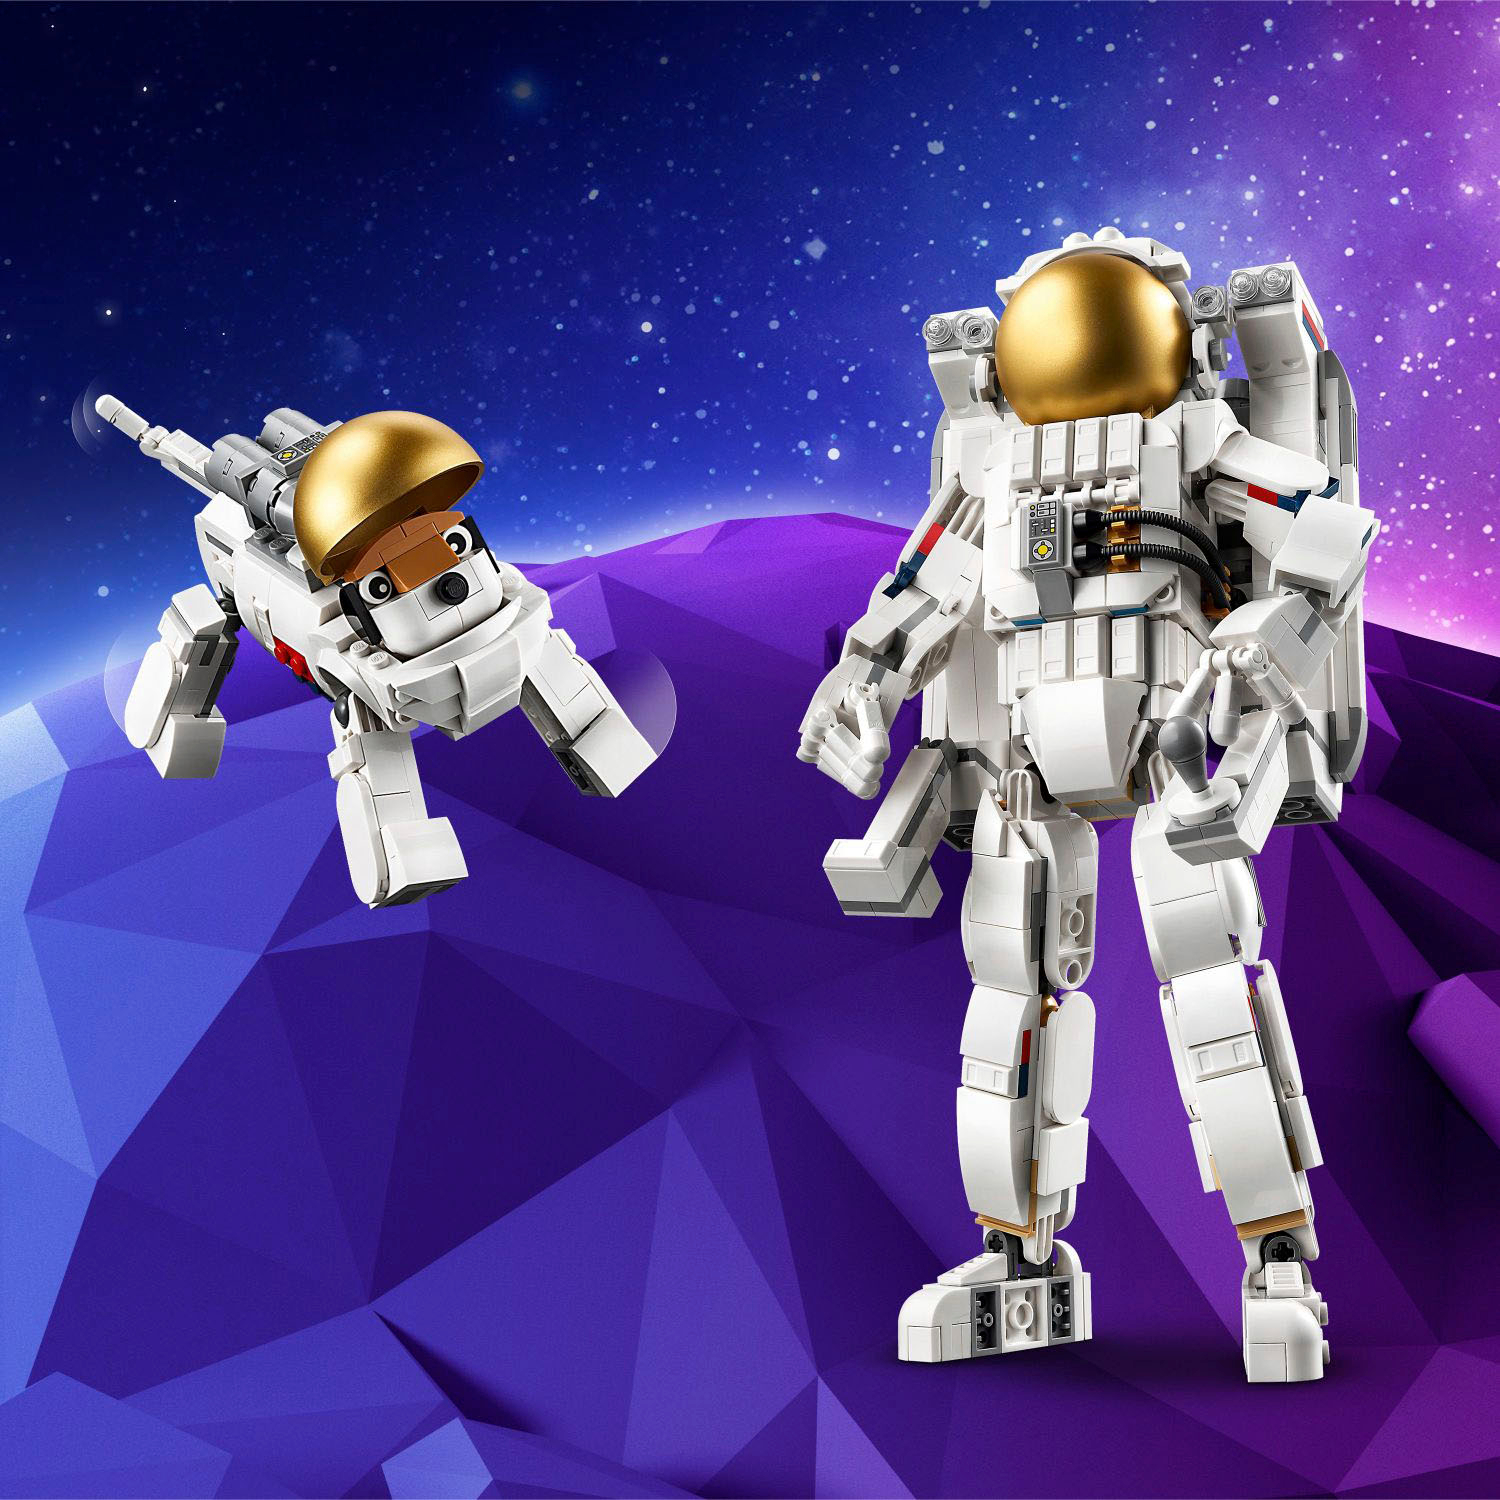 LEGO Creator 31152 3in1 Astronauta Trasformabile in Cane Giocattolo o in  Astronave, Giochi da Costruire per Bambini di 9+ - LEGO - Creator -  Generici - Giocattoli